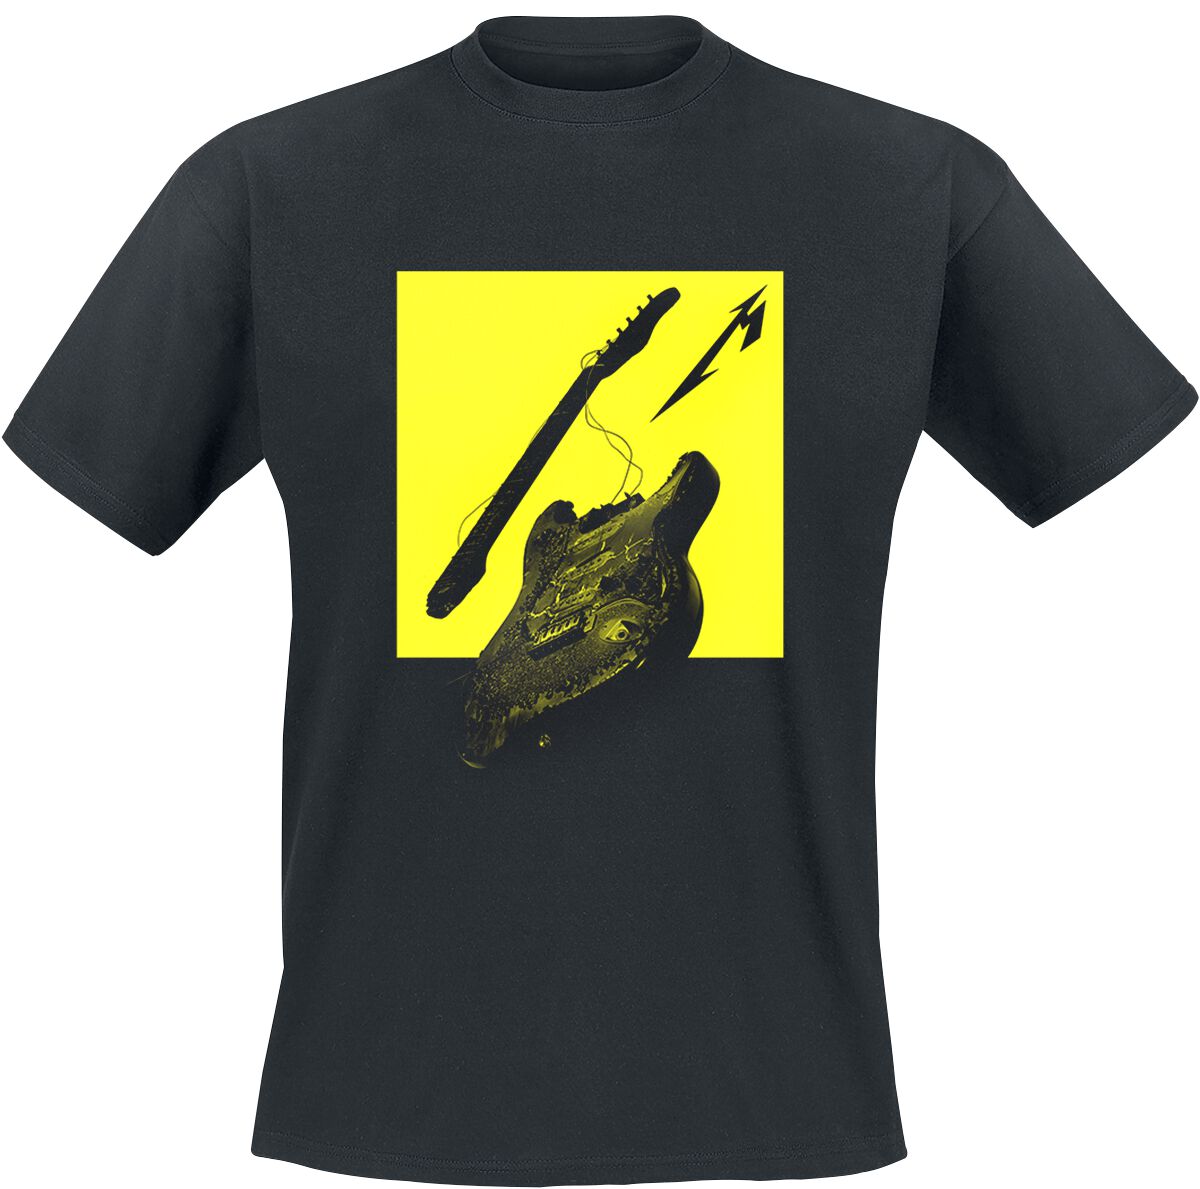 Metallica T-Shirt - Broken/Burnt Guitar (M72) - S bis XL - für Männer - Größe M - schwarz  - Lizenziertes Merchandise!